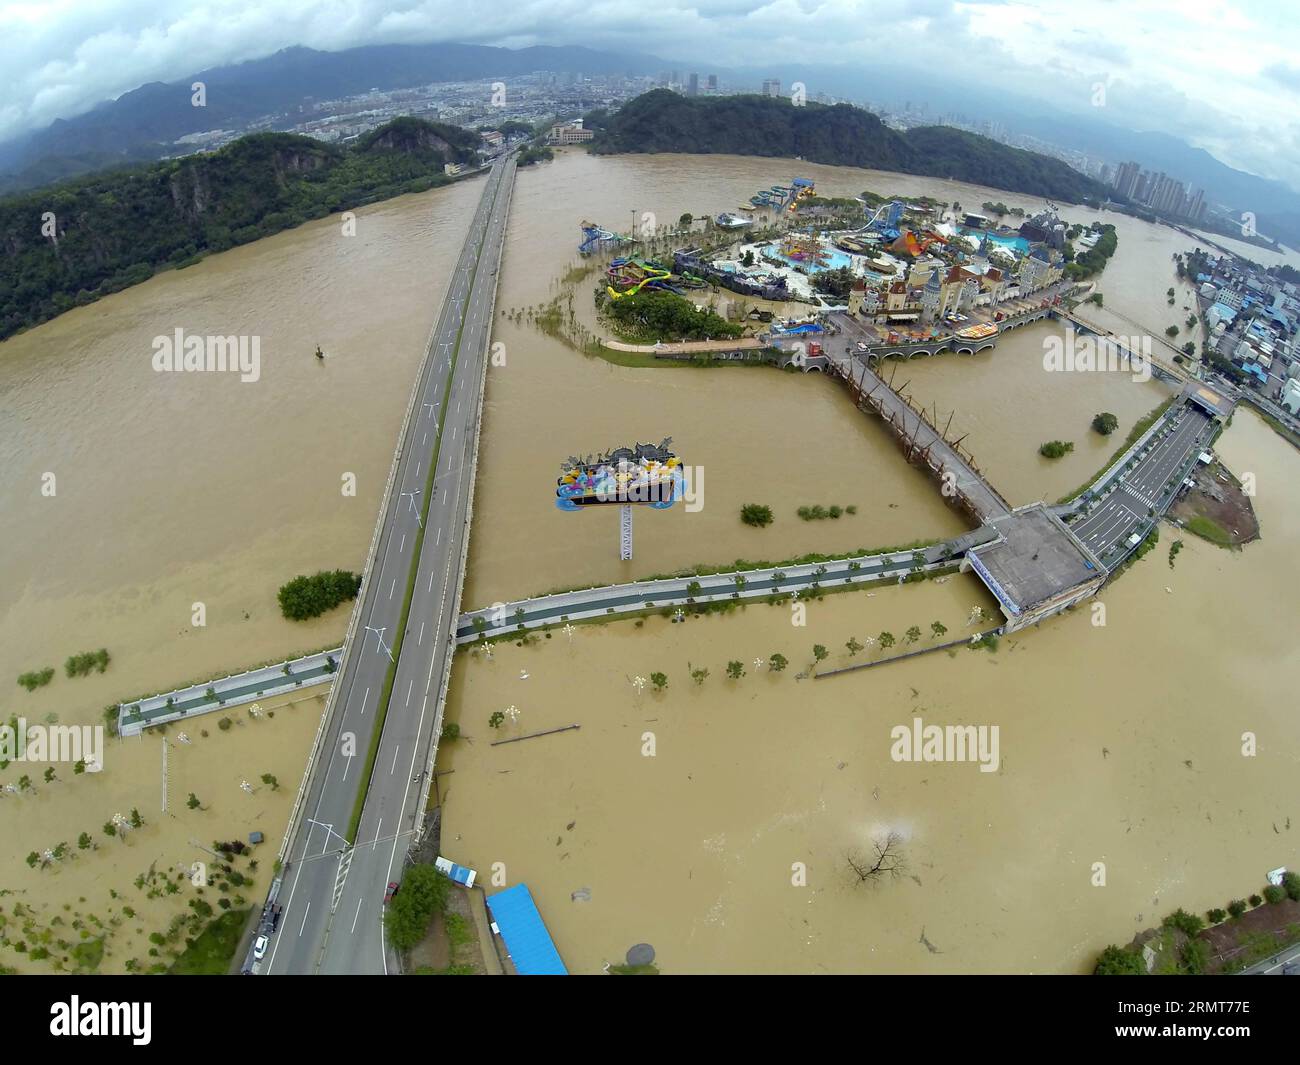 Une photo aérienne prise le 20 août 2014 montre la montée du niveau de l'eau dans la rivière Oujiang dans la ville de Lishui, dans la province du Zhejiang de l'est de la Chine. Plus de 20 000 000 personnes ont été évacuées lorsque les inondations déclenchées par la pluie ont frappé la ville. ) (Ry) CHINA-ZHEJIANG-LISHUI-FLOOD (CN) LiangxZhen PUBLICATIONxNOTxINxCHN la photo aérienne prise LE 20 2014 août montre la montée du niveau d'eau dans la rivière dans la ville de Lishui est Chine S Zhejiang province de Zhejiang plus de 20 000 célébrités ont été évacuées alors que la pluie a déclenché l'inondation Ry Chine Zhejiang Lishui CN PUBLICATIONxNOTxINxCHN Banque D'Images